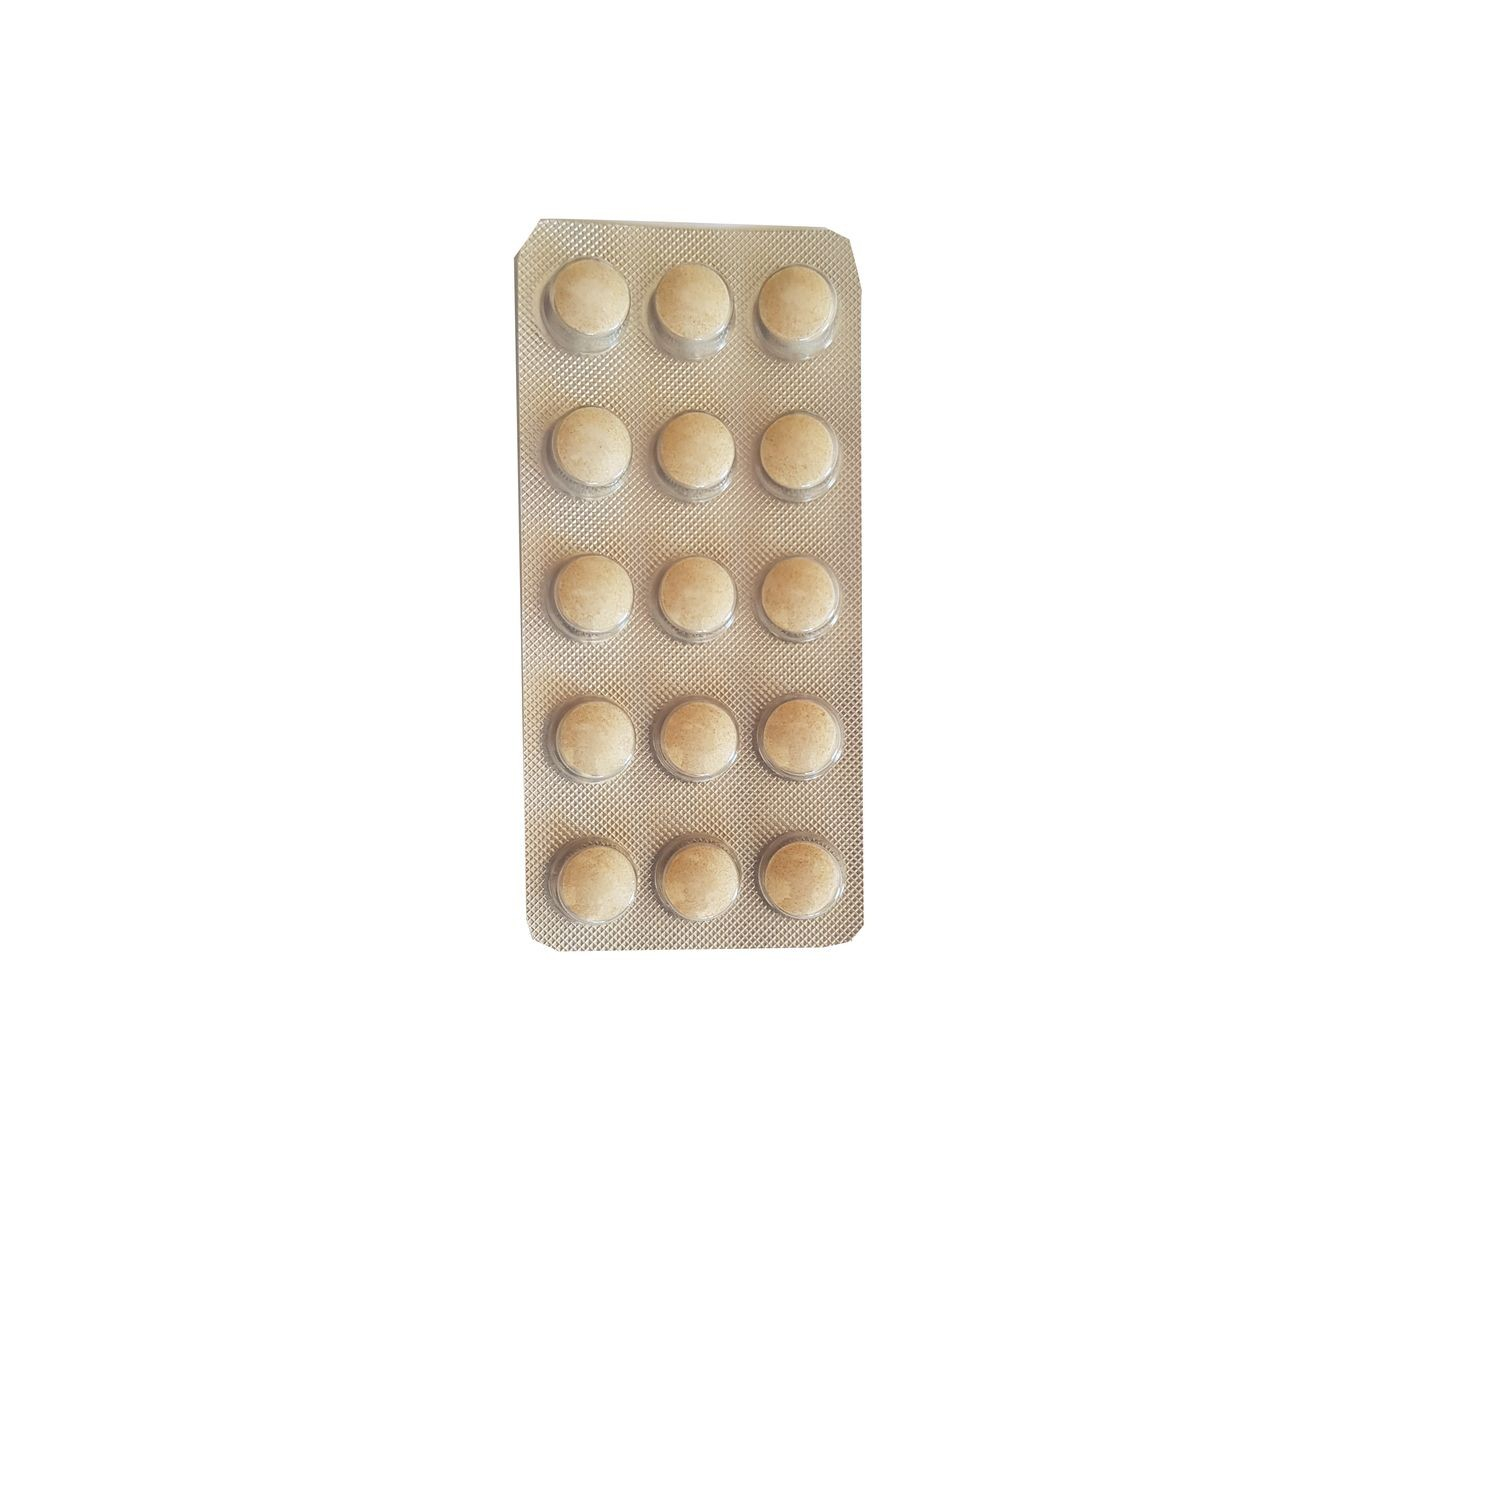 Vetocanis comprimidos masticables para la higiene dental para perros x 30 uds